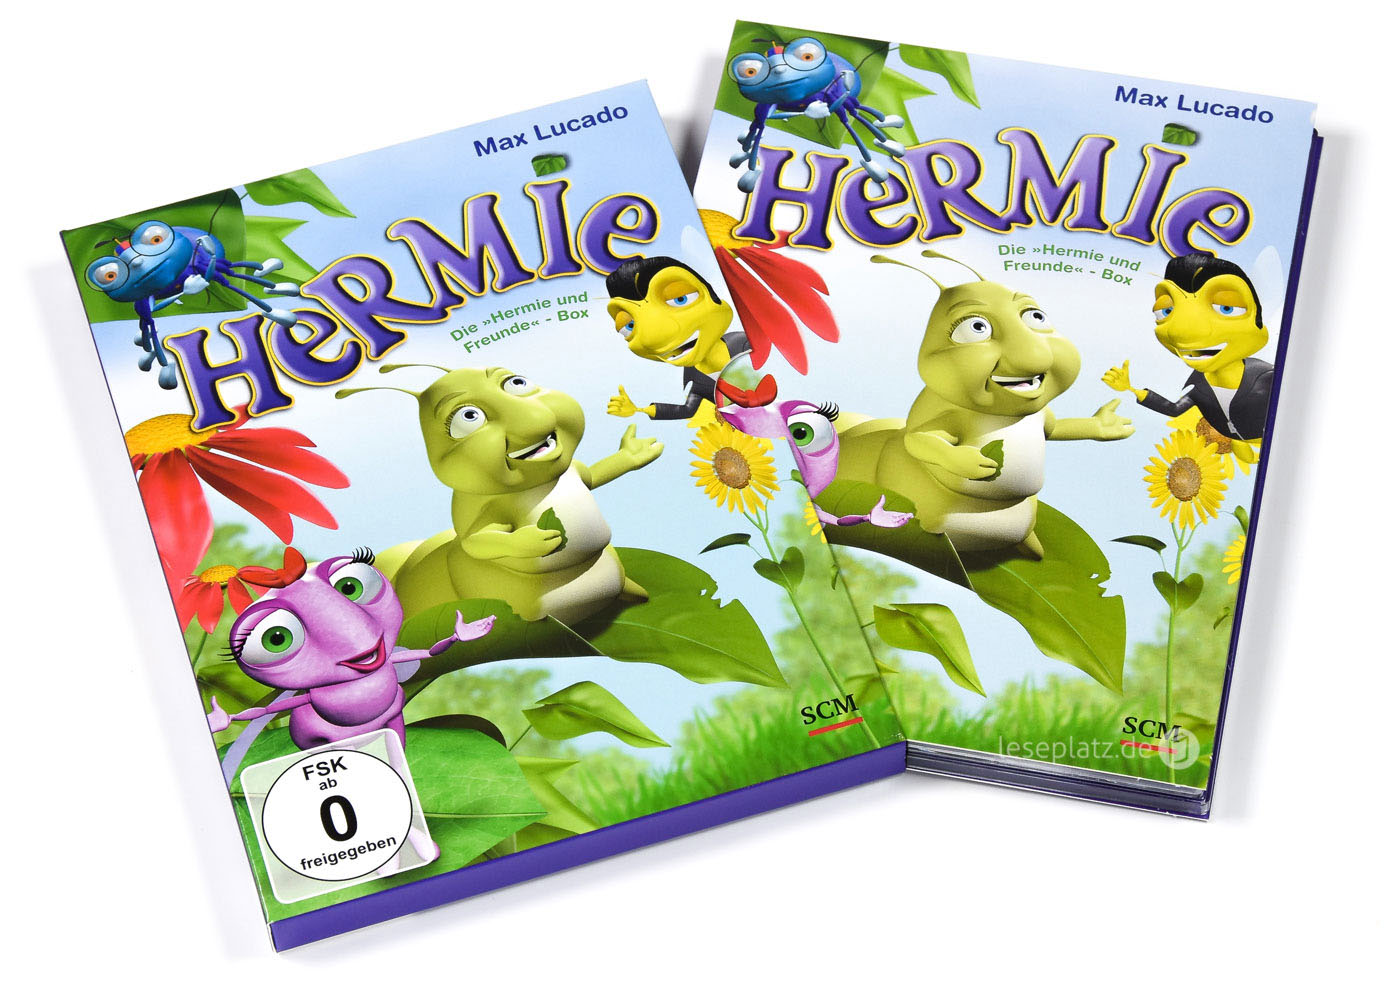 Die "Hermie und Freunde" - DVD-Box